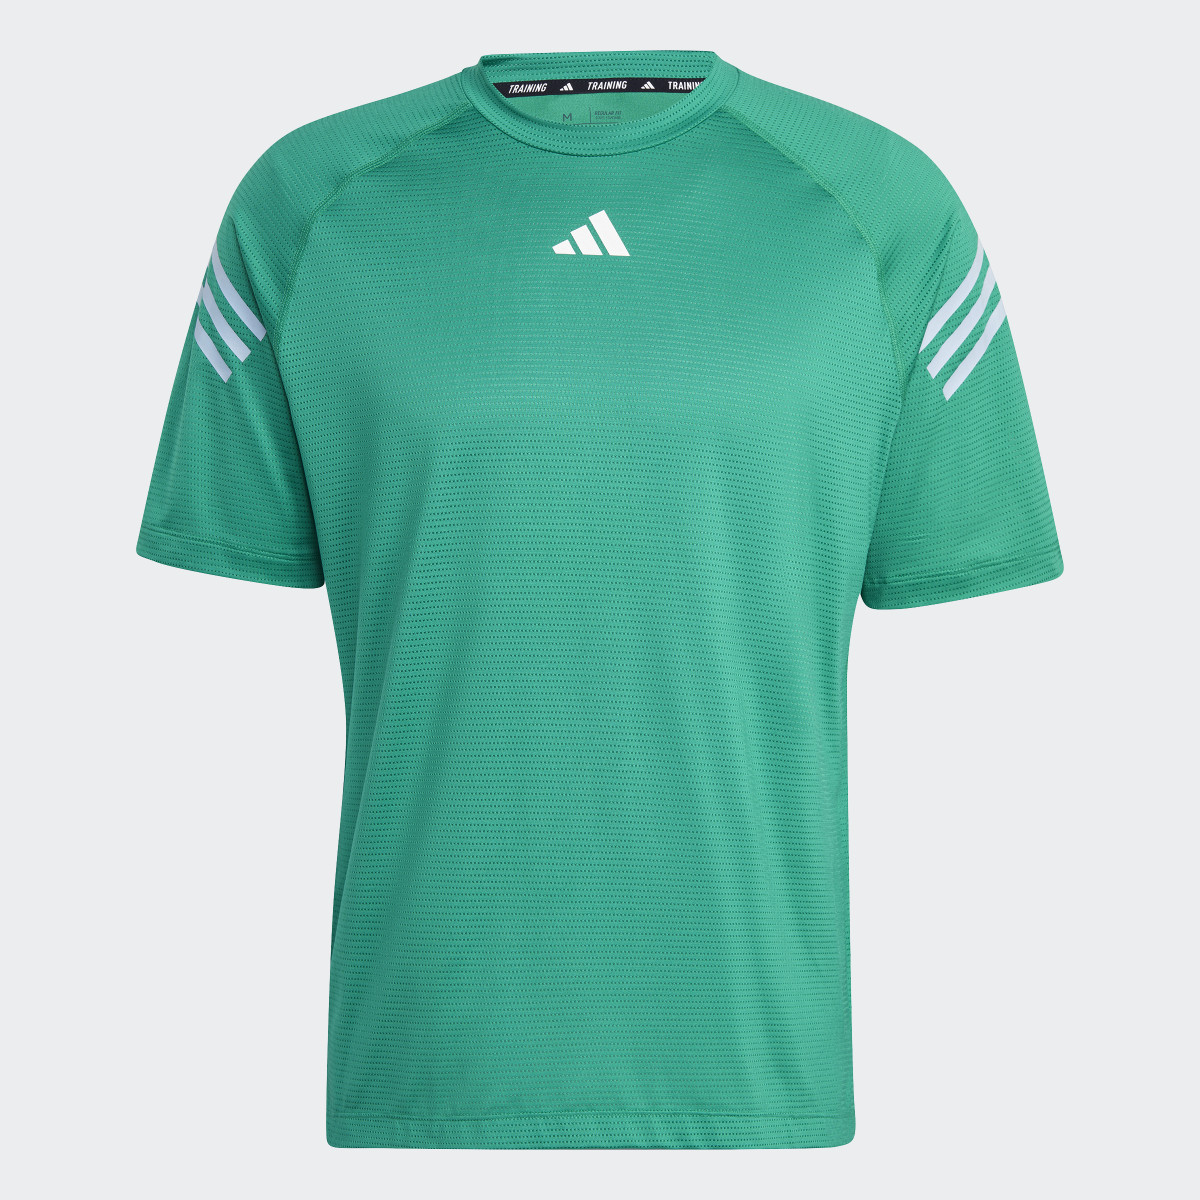 Adidas Train Icons 3-Stripes Training T-Shirt. 5